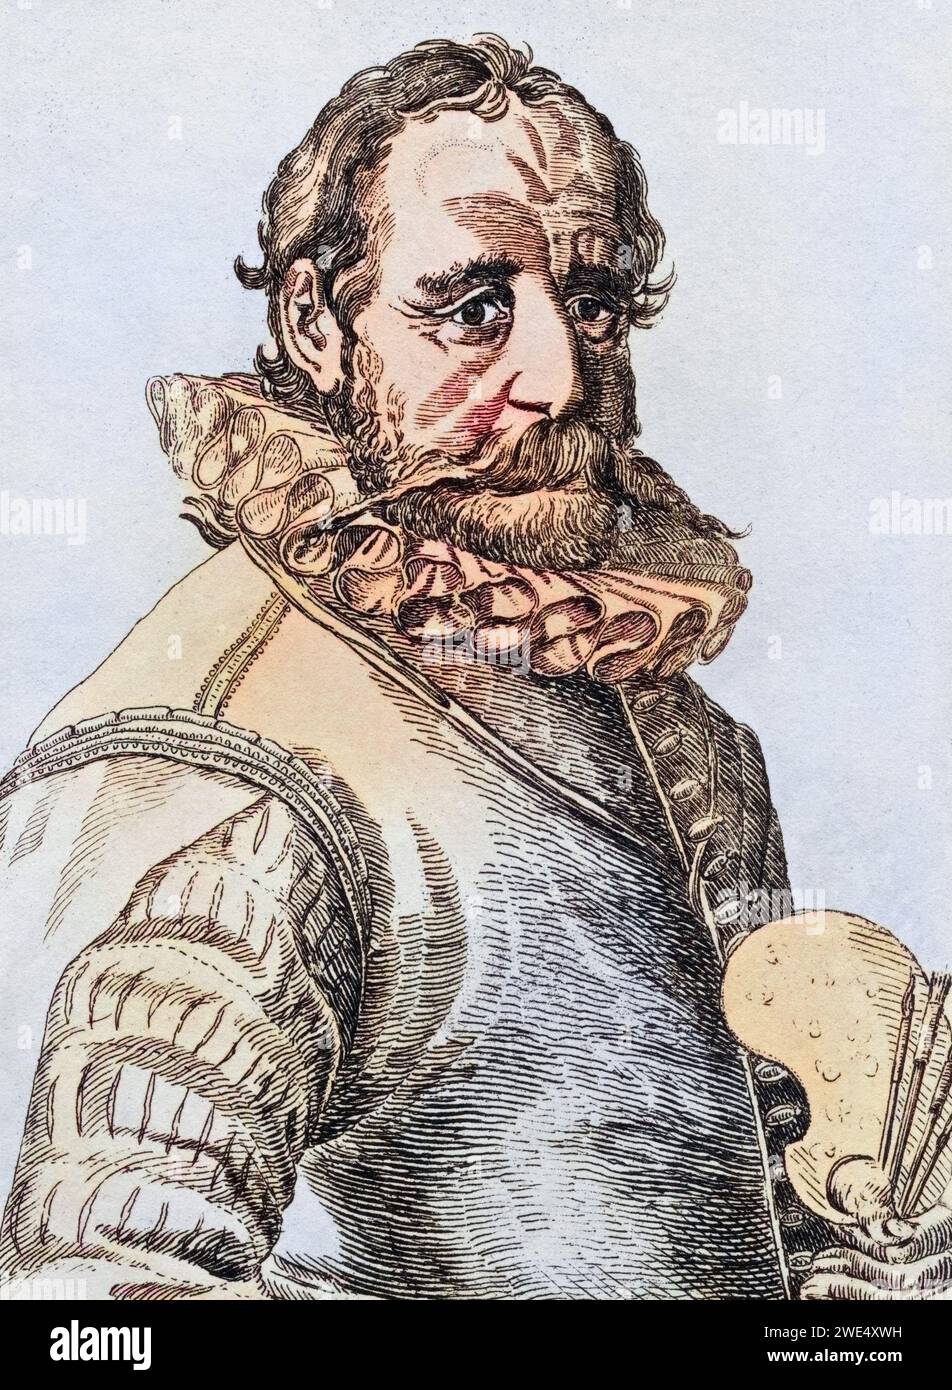 Hans Bol 1534-1593 flämischer Künstler, Historisch, digital restaurierte Reproduktion von einer Vorlage aus dem 19. Jahrhundert, data record non indicata Foto Stock